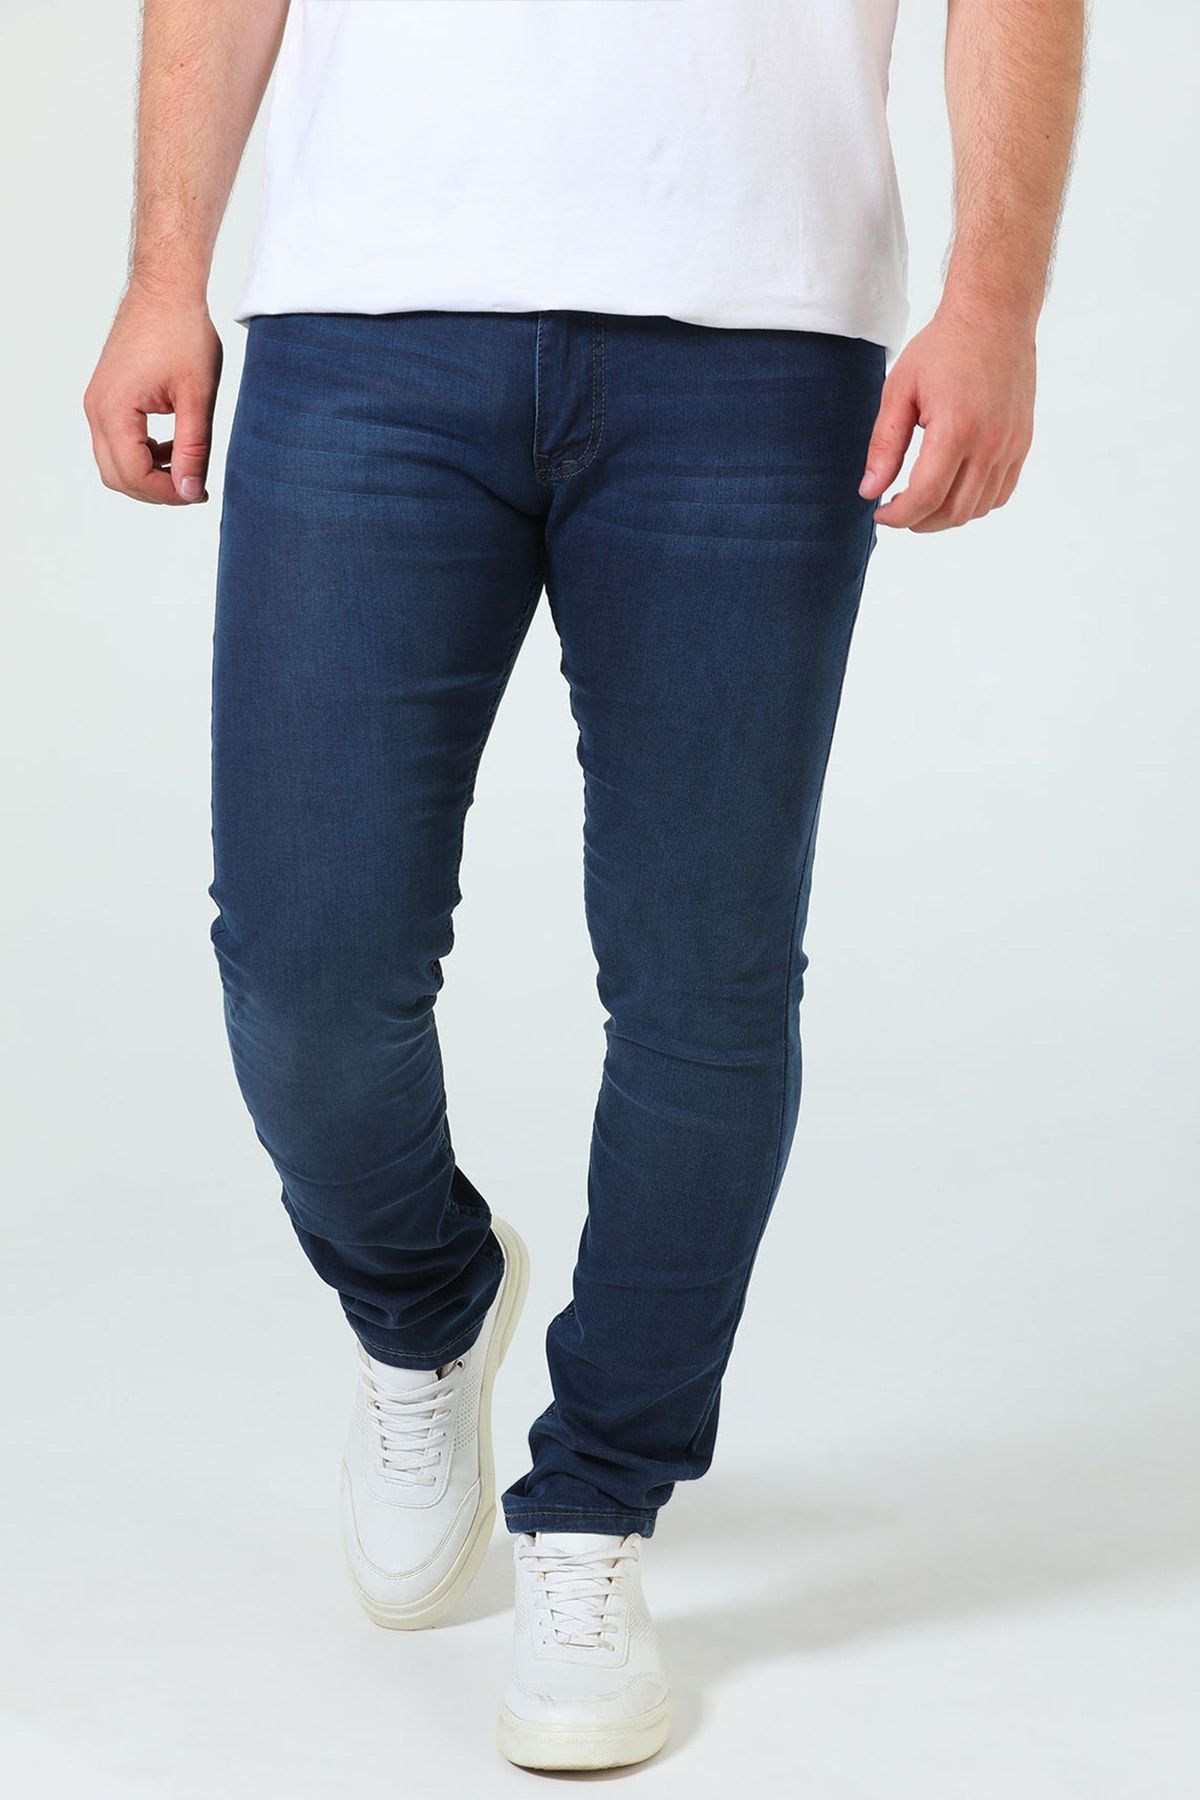 Julude Koyulacivert Erkek Likralı Jeans Pantolon